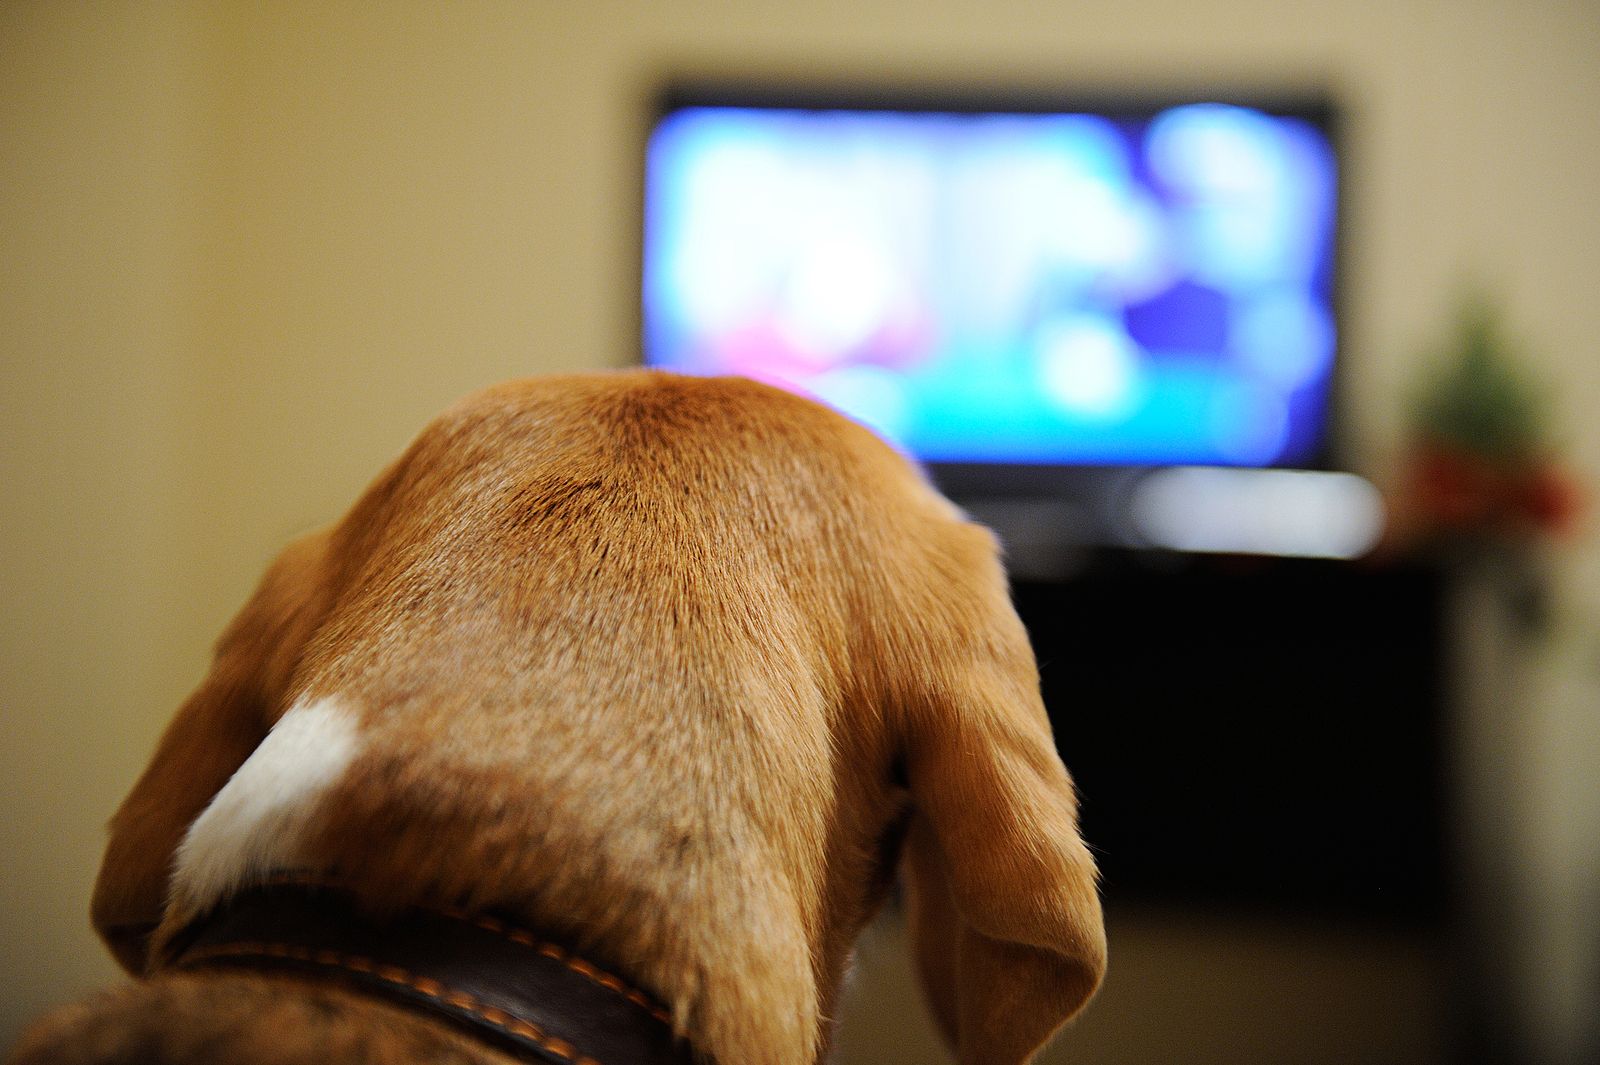 ¿Qué programas de televisión prefieren ver los perros?